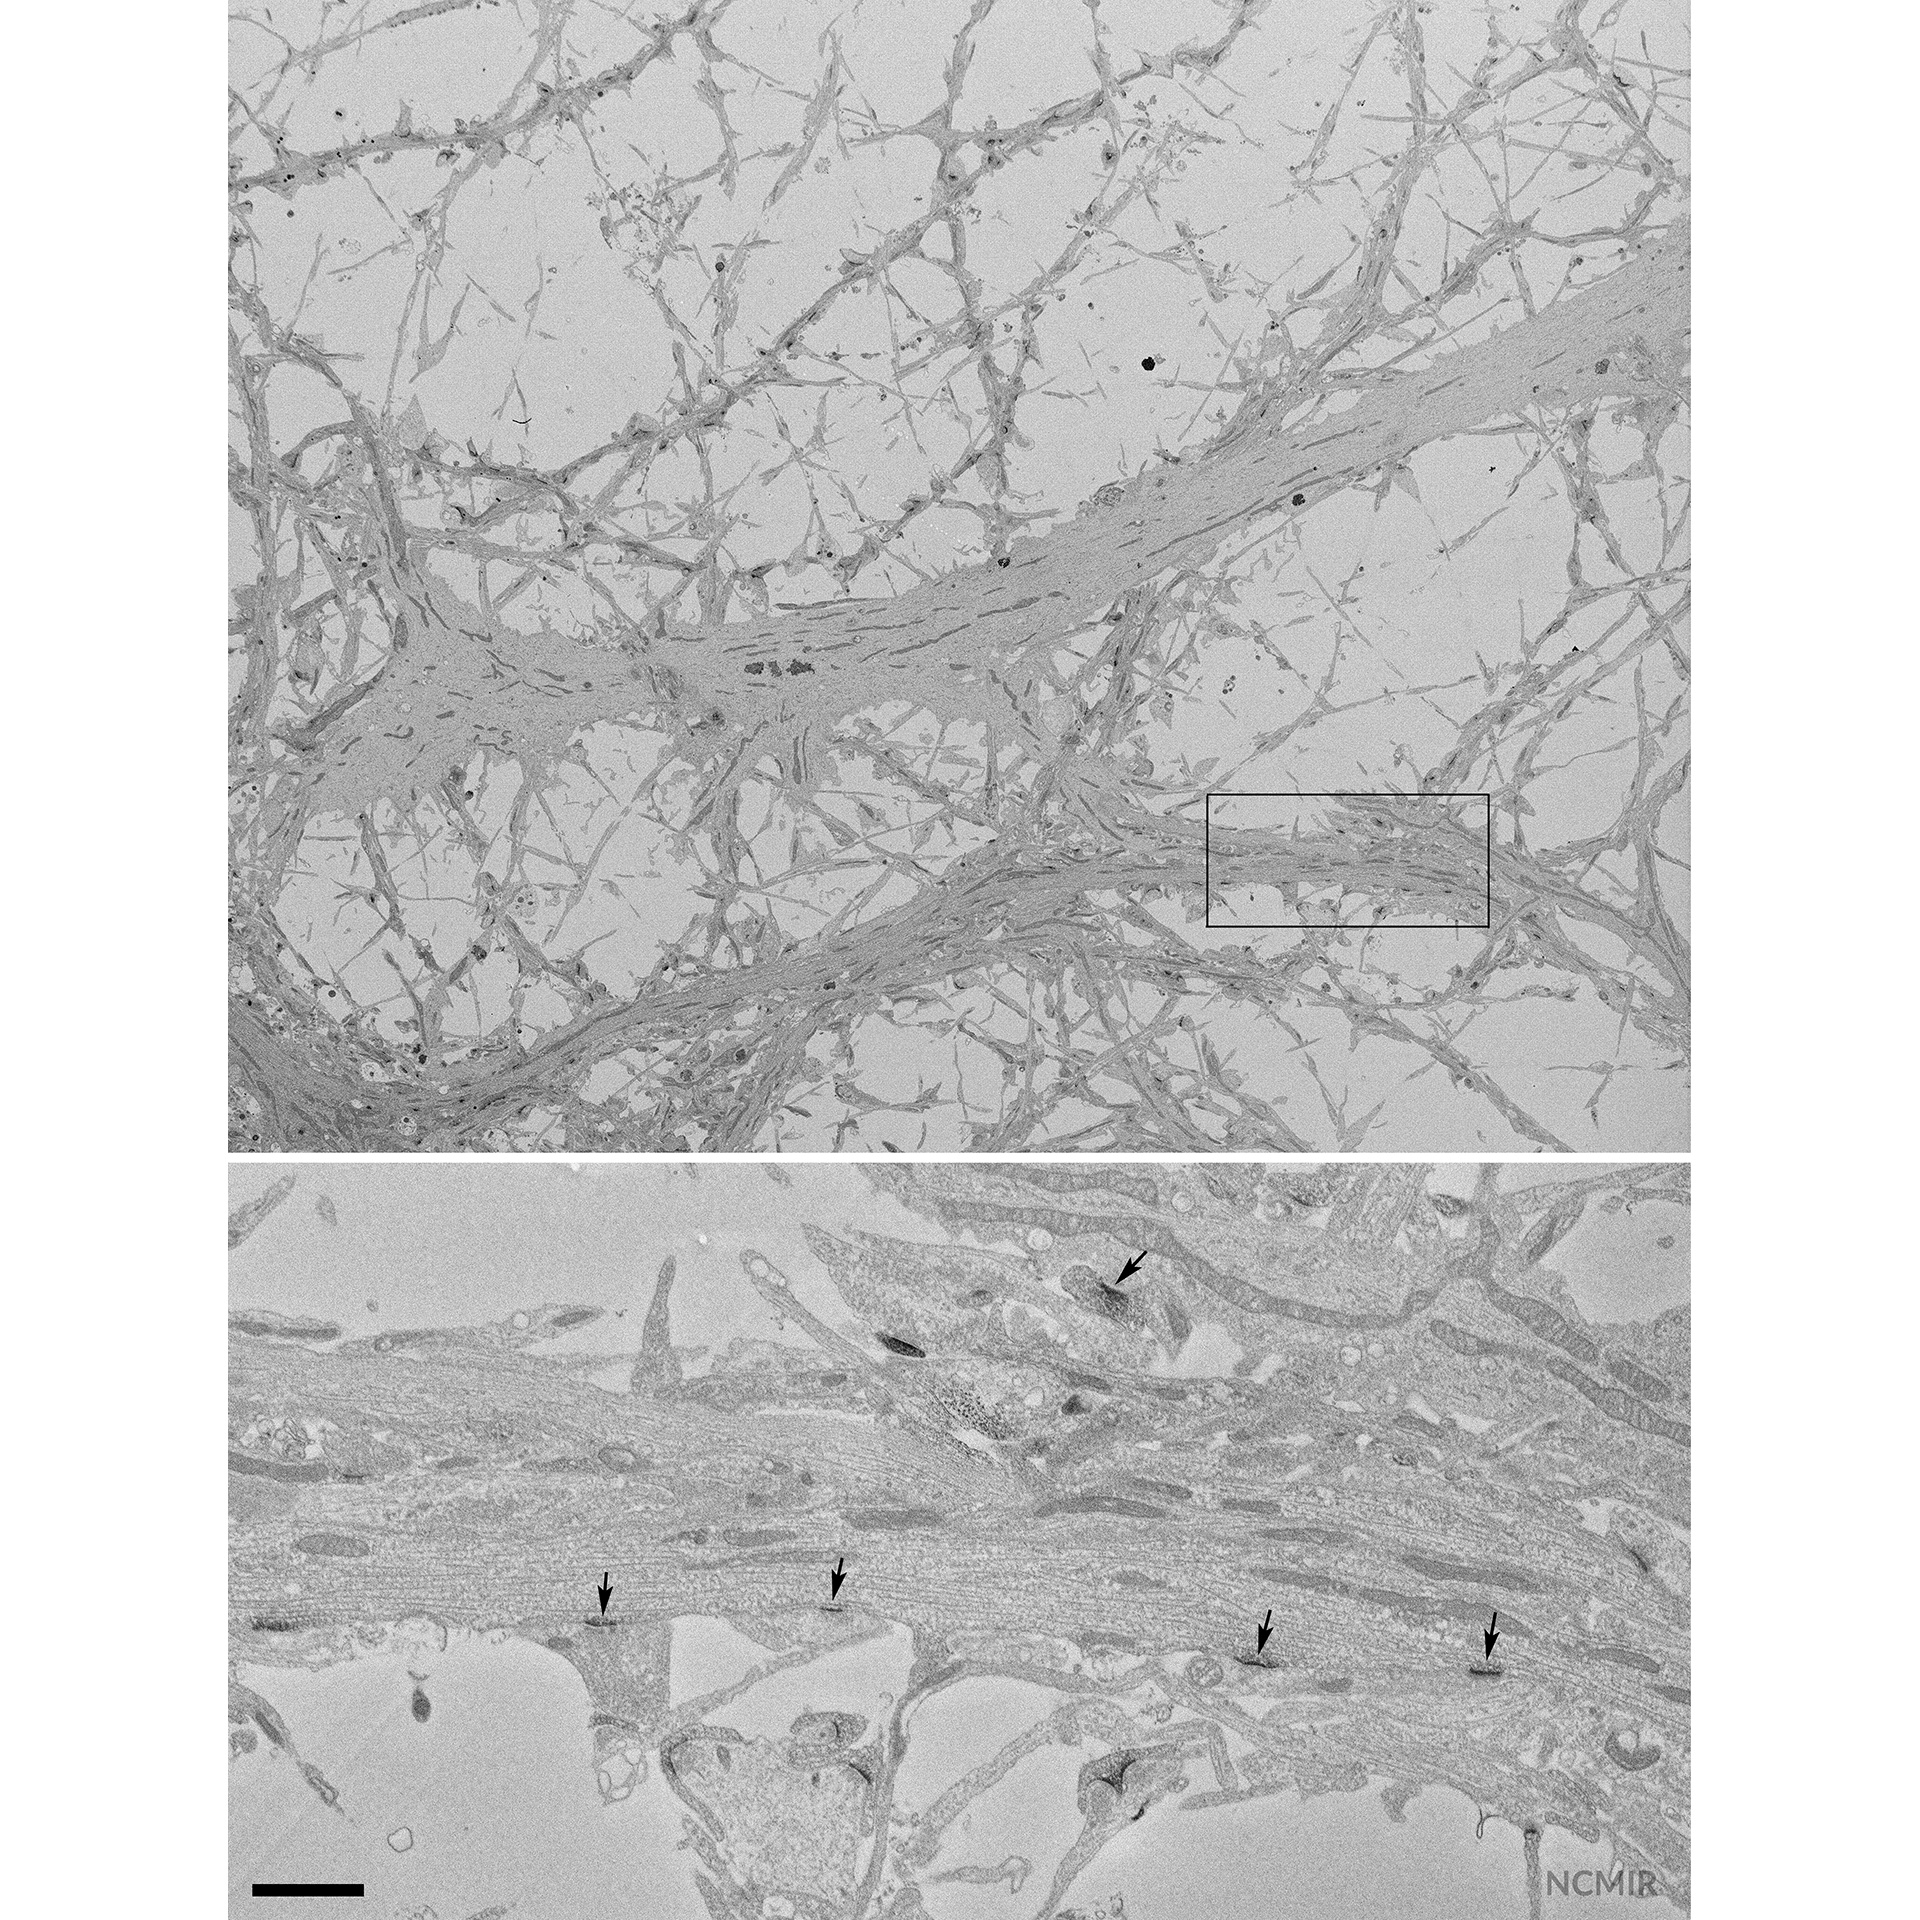 Cerveau de souris (neurones hippocampiques cultivés exprimant PSD95-APEX2 pour colorer les densités post-synaptiques)